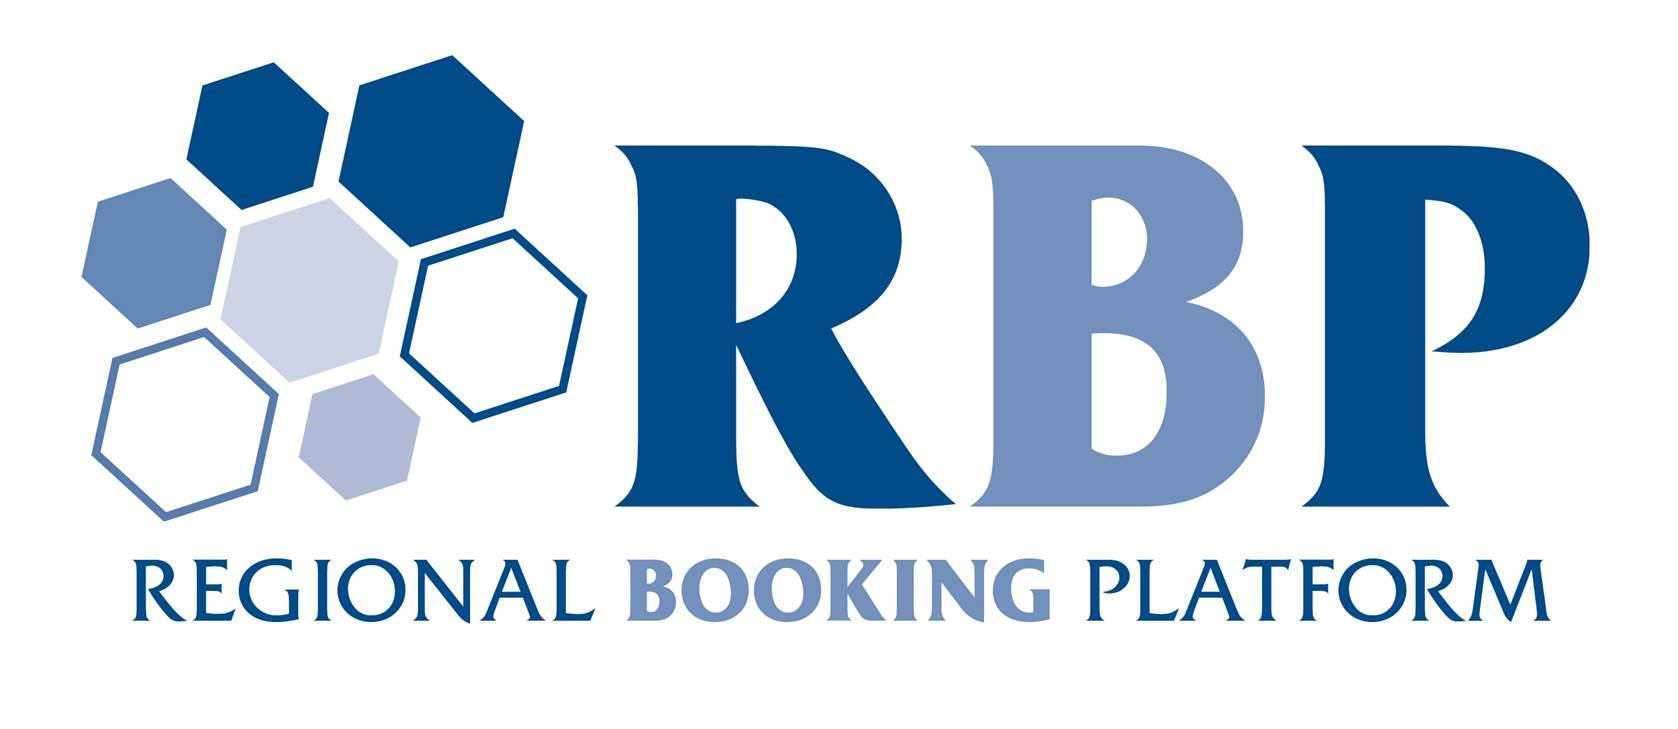 Kapacitáslekötési Platform Szabályzat A Regional Booking Platform